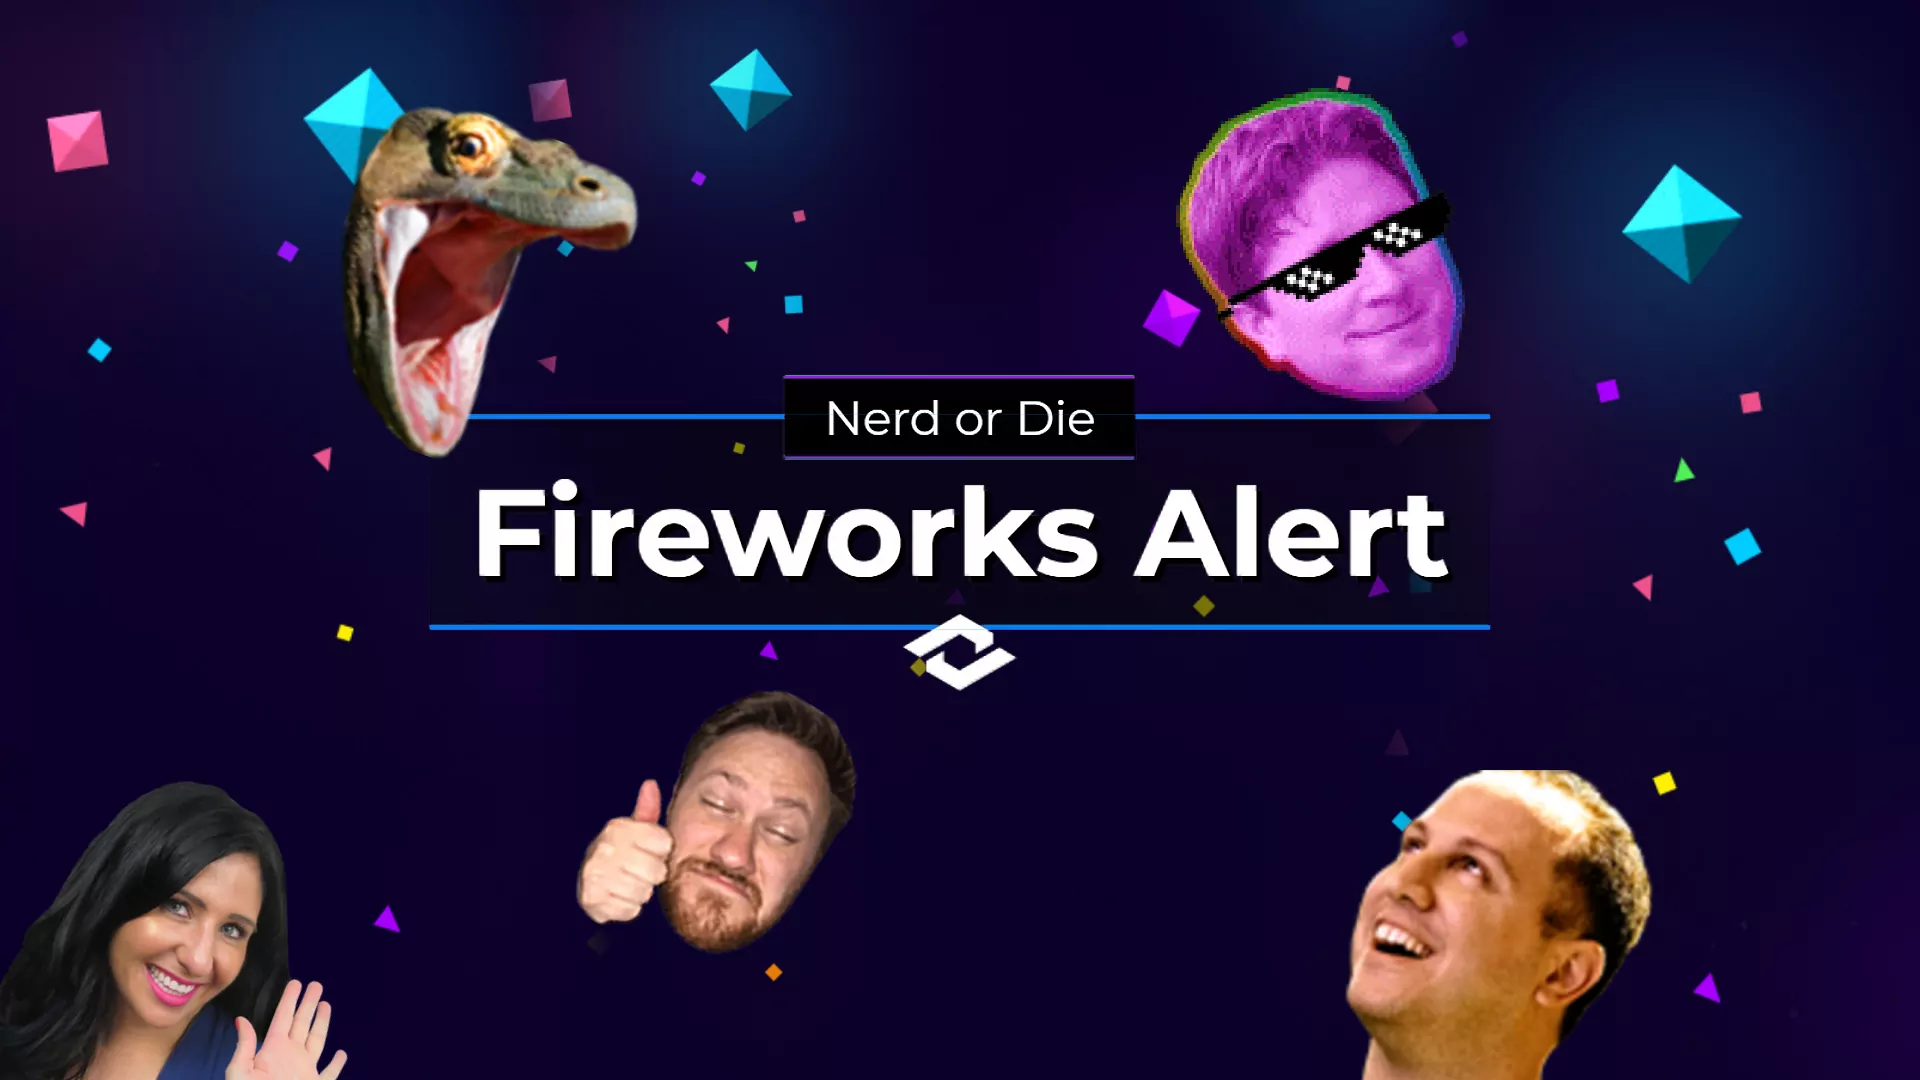 Alerta de fogos de artifício Twitch Emotes